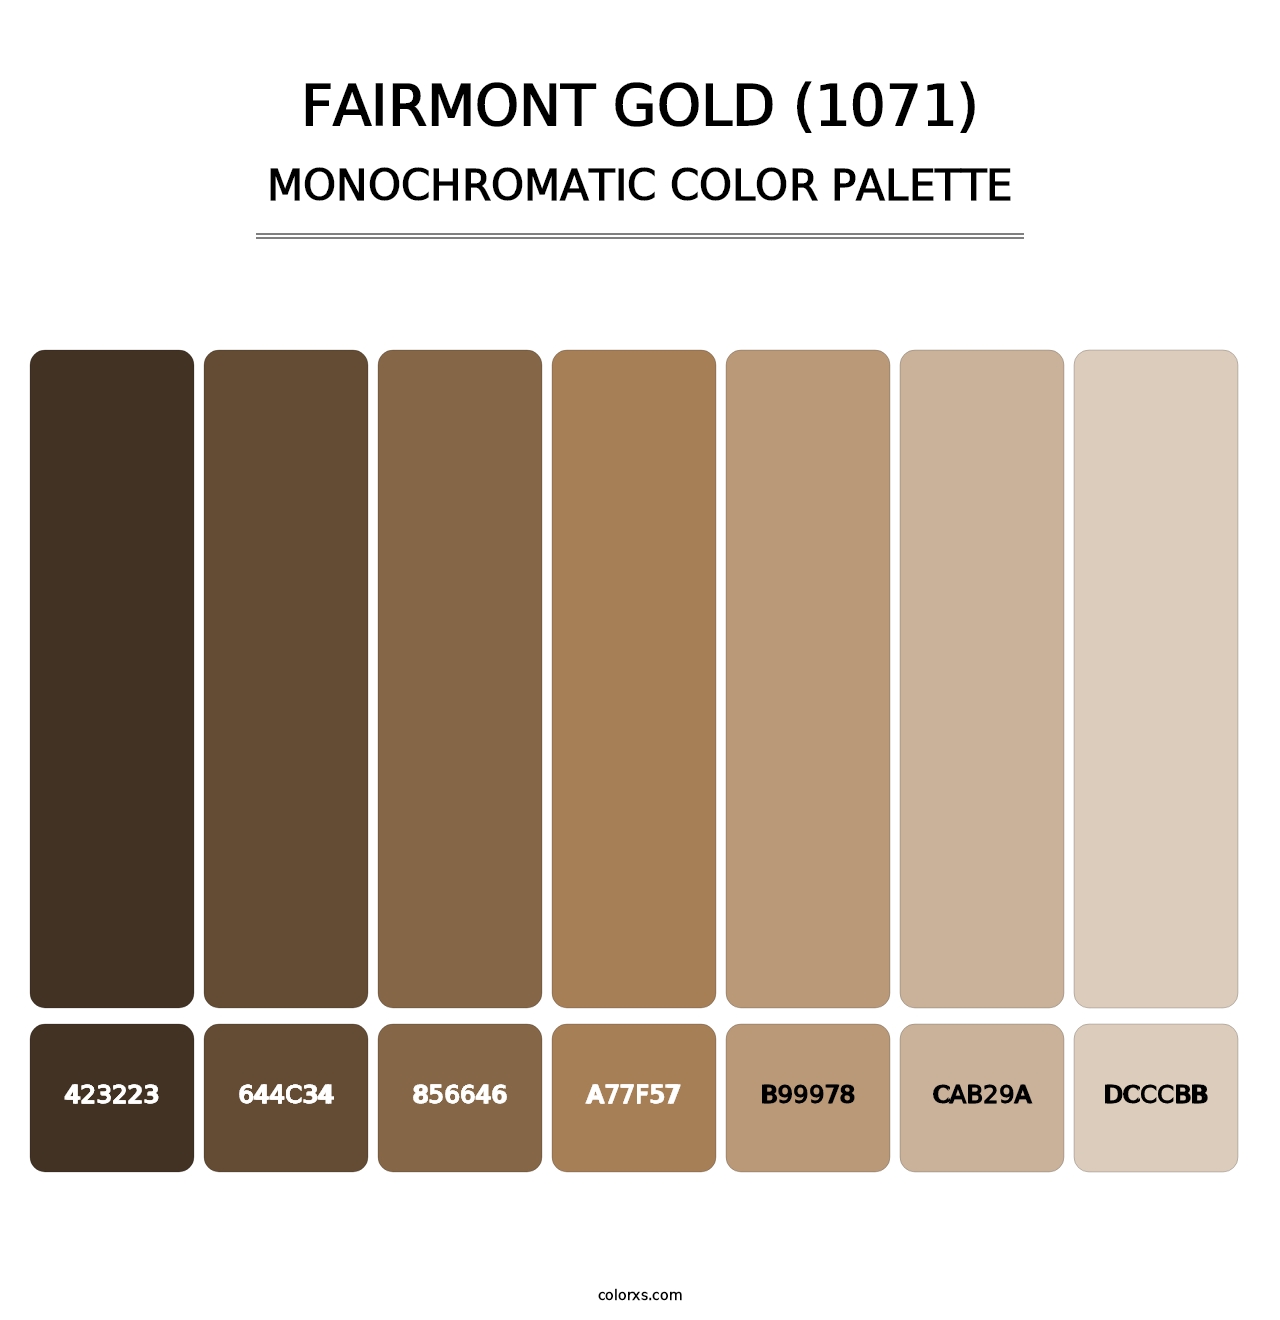 Fairmont Gold (1071) - Monochromatic Color Palette